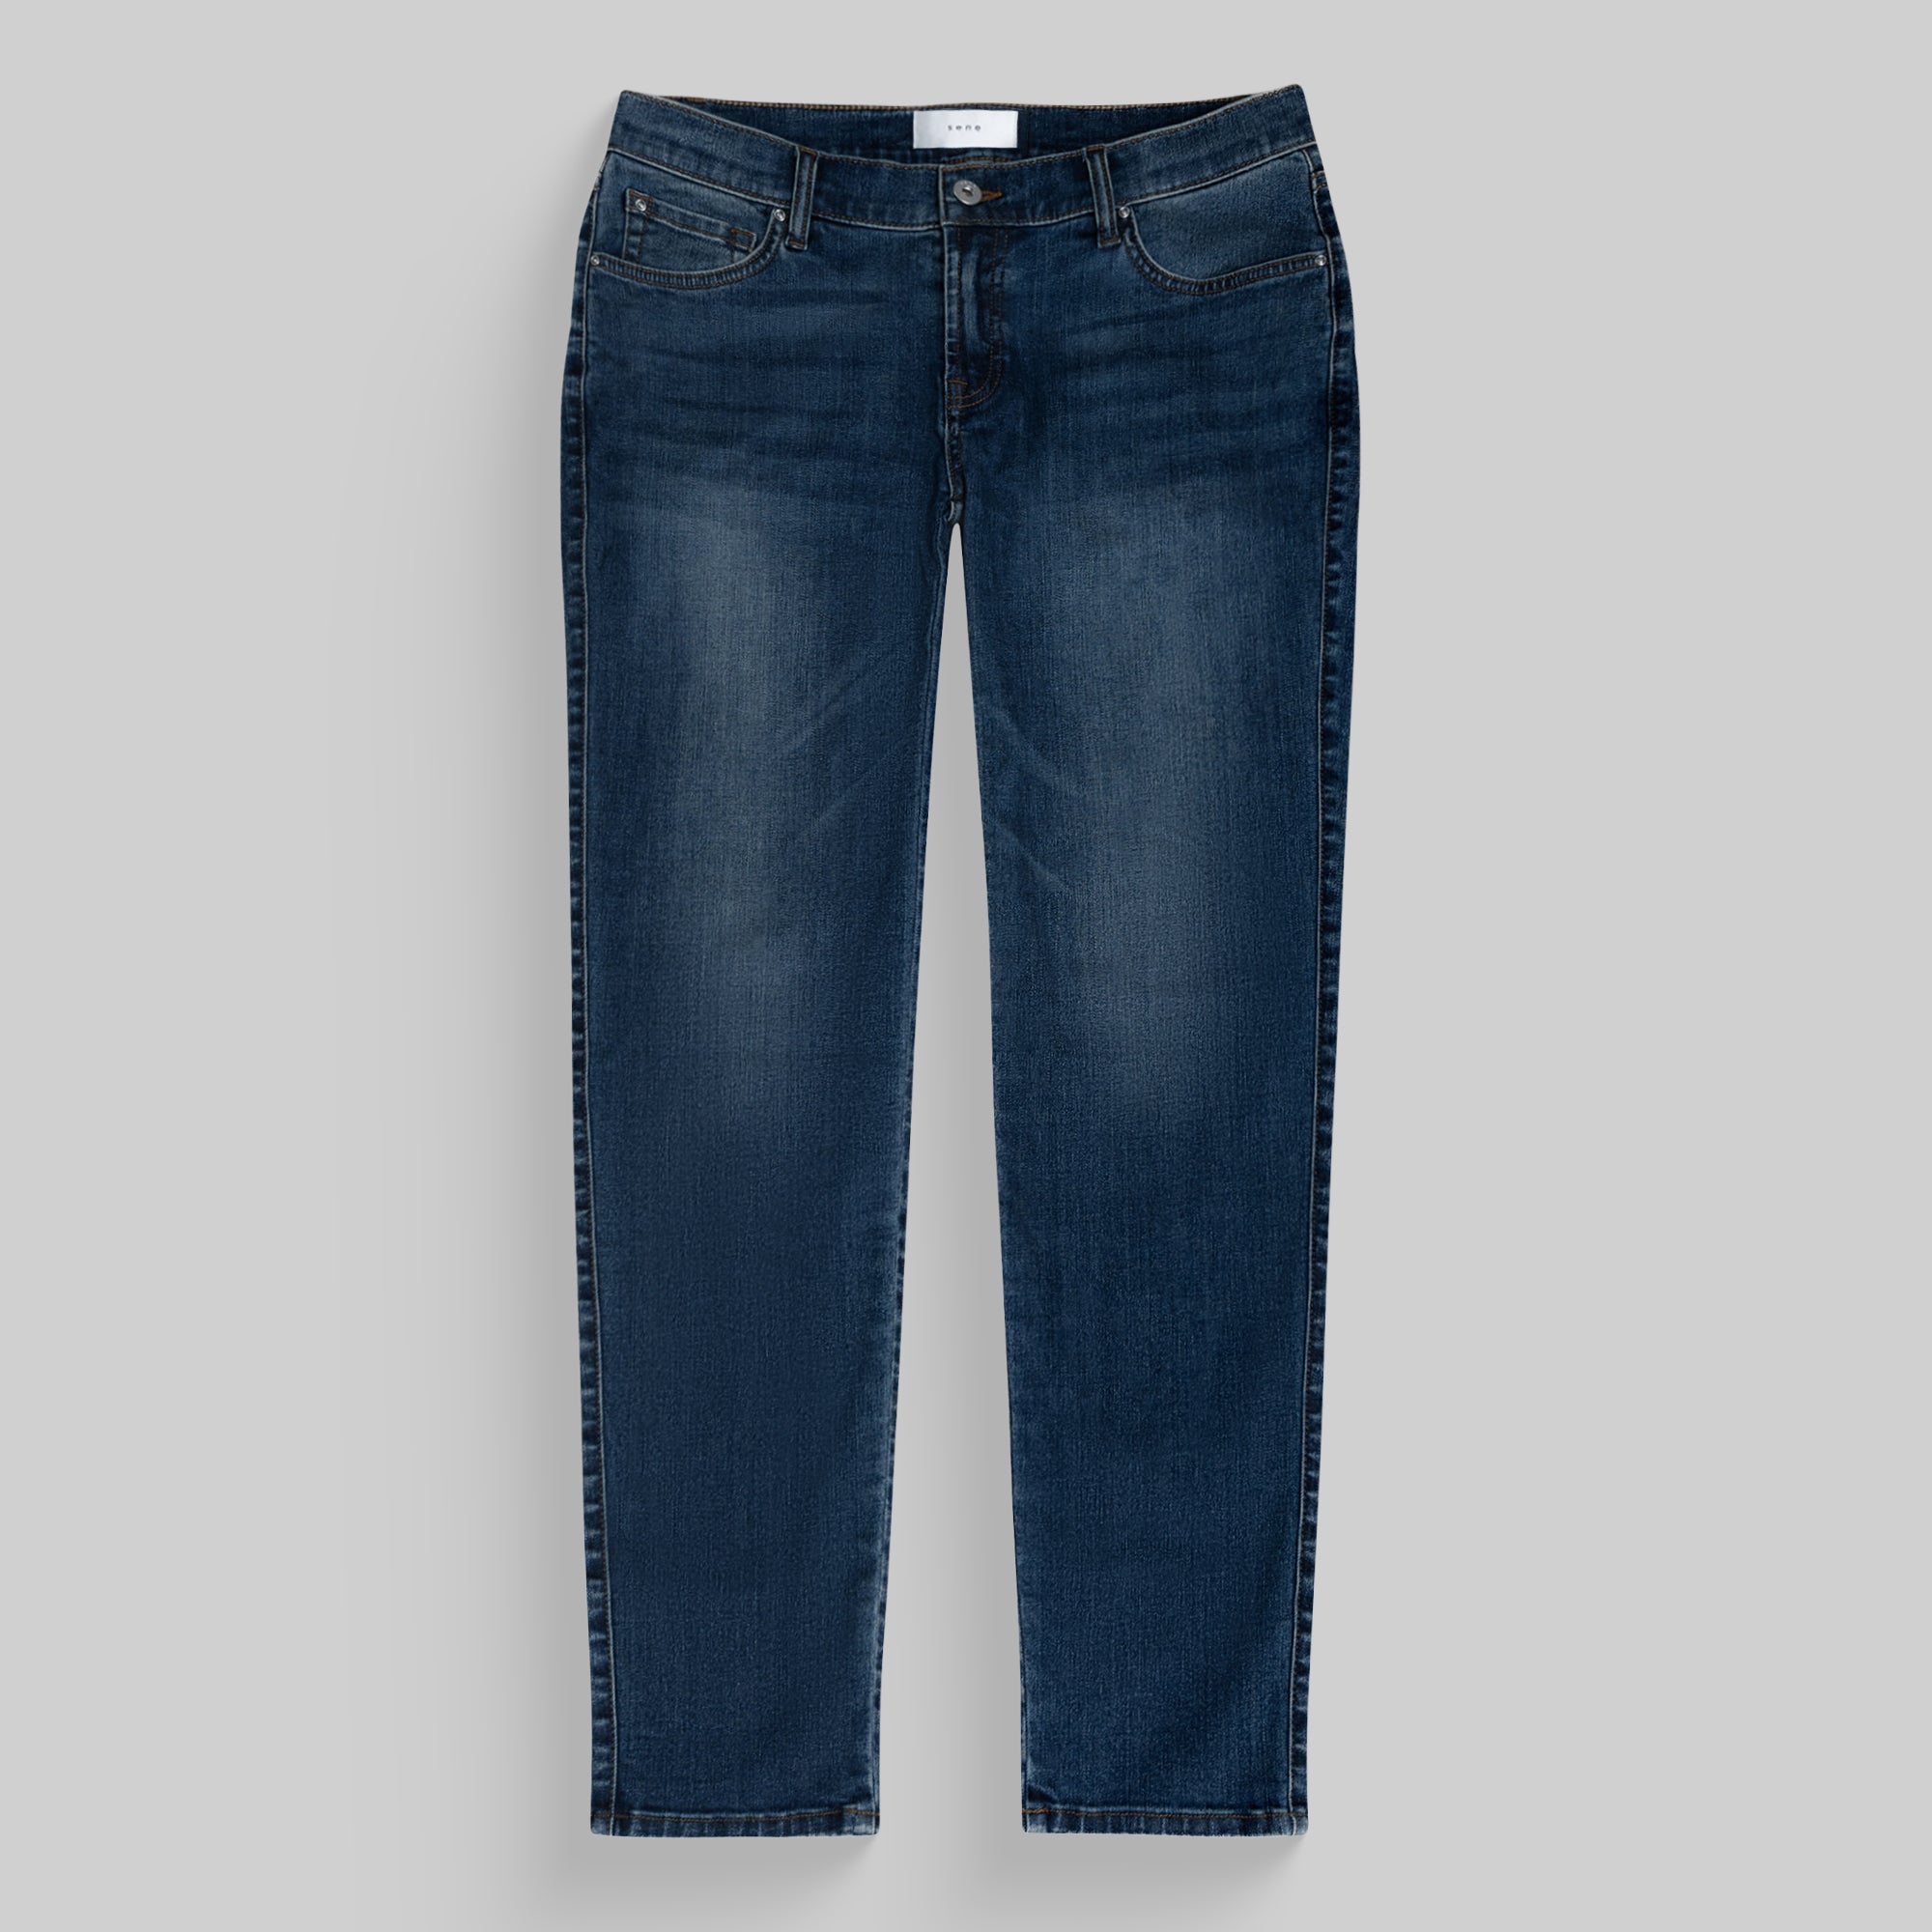 Men's Custom Jeans